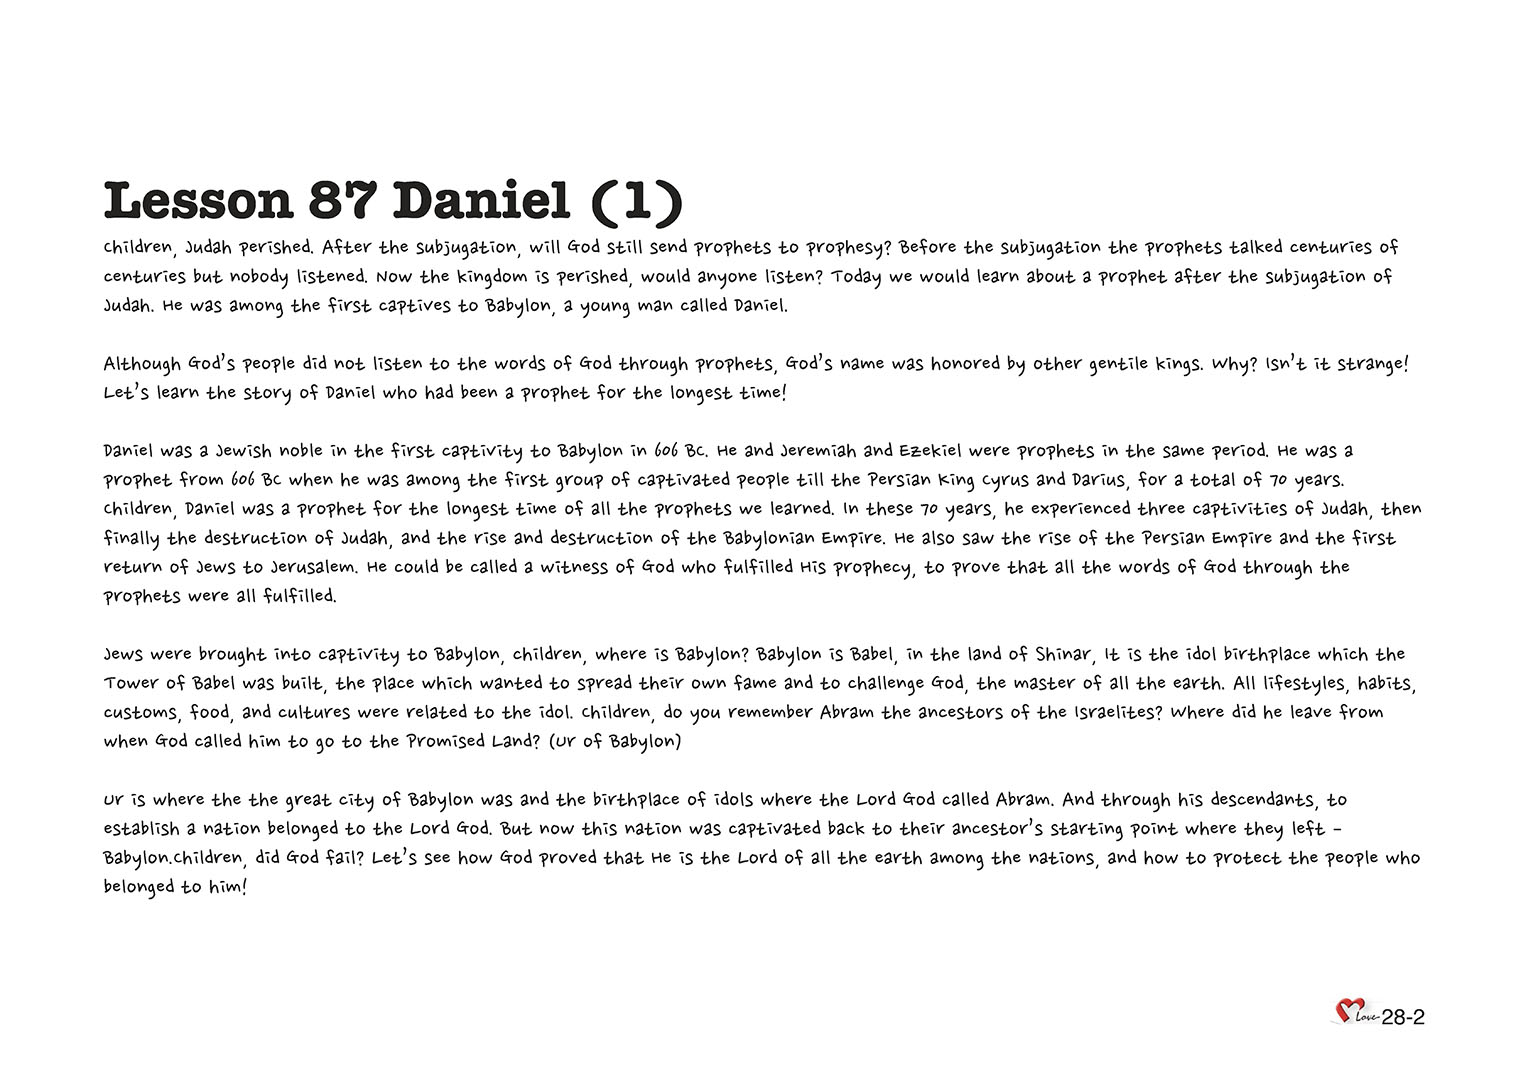 Chapter 28 - Lesson 87 - Daniel (1)